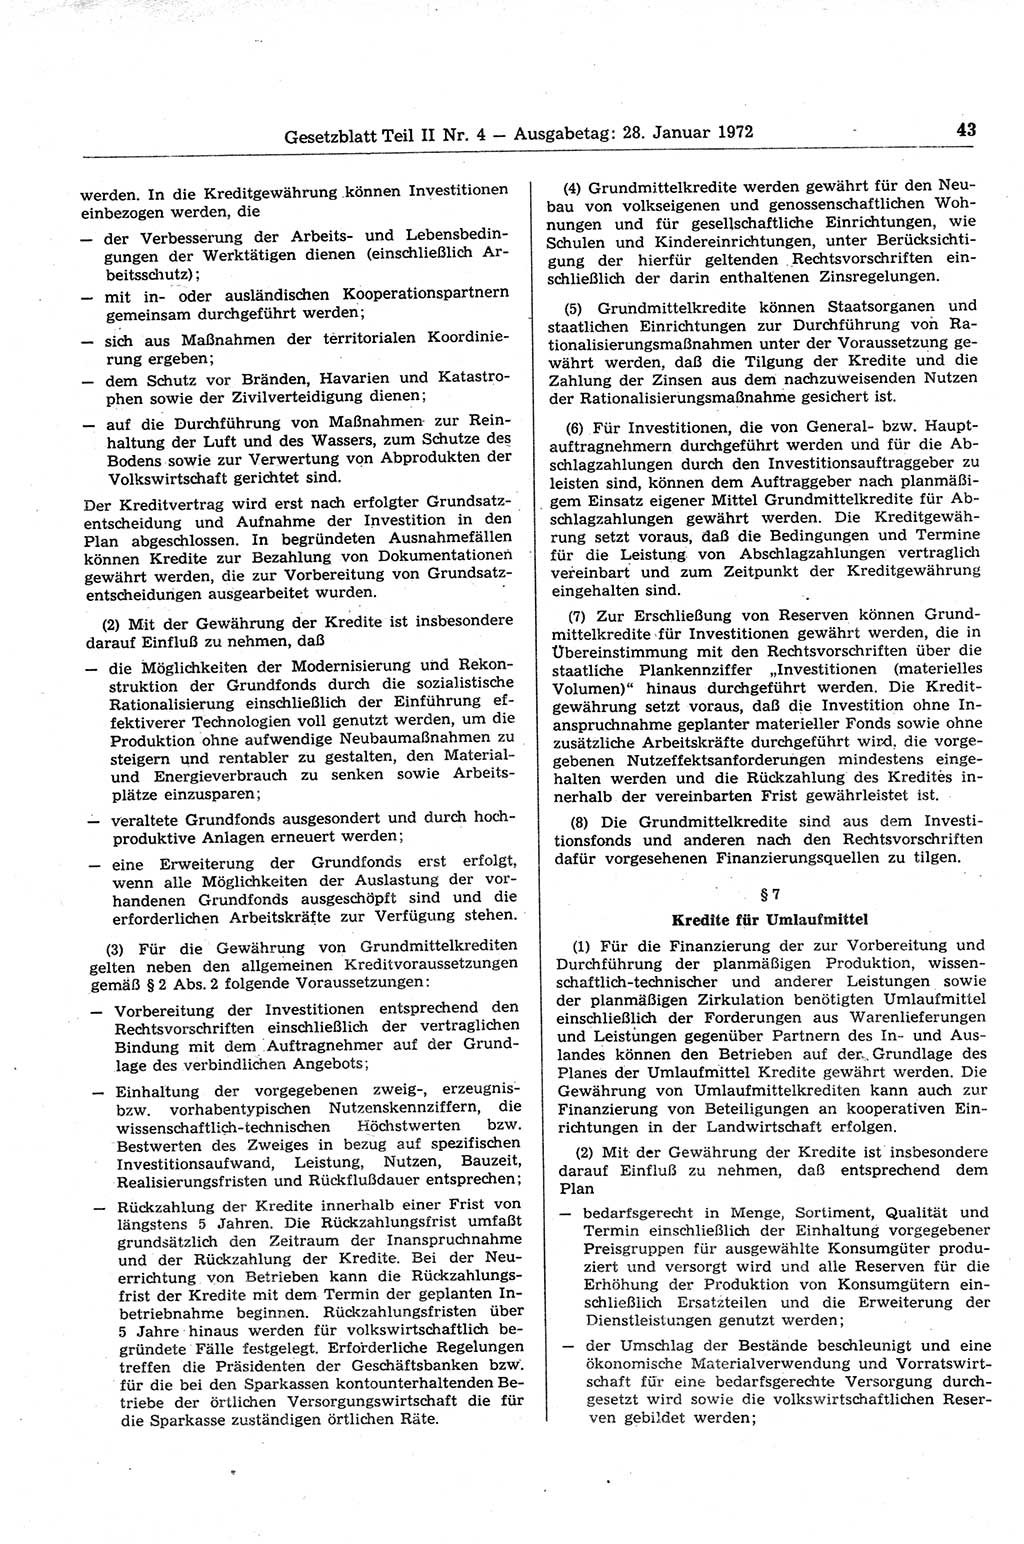 Gesetzblatt (GBl.) der Deutschen Demokratischen Republik (DDR) Teil ⅠⅠ 1972, Seite 43 (GBl. DDR ⅠⅠ 1972, S. 43)